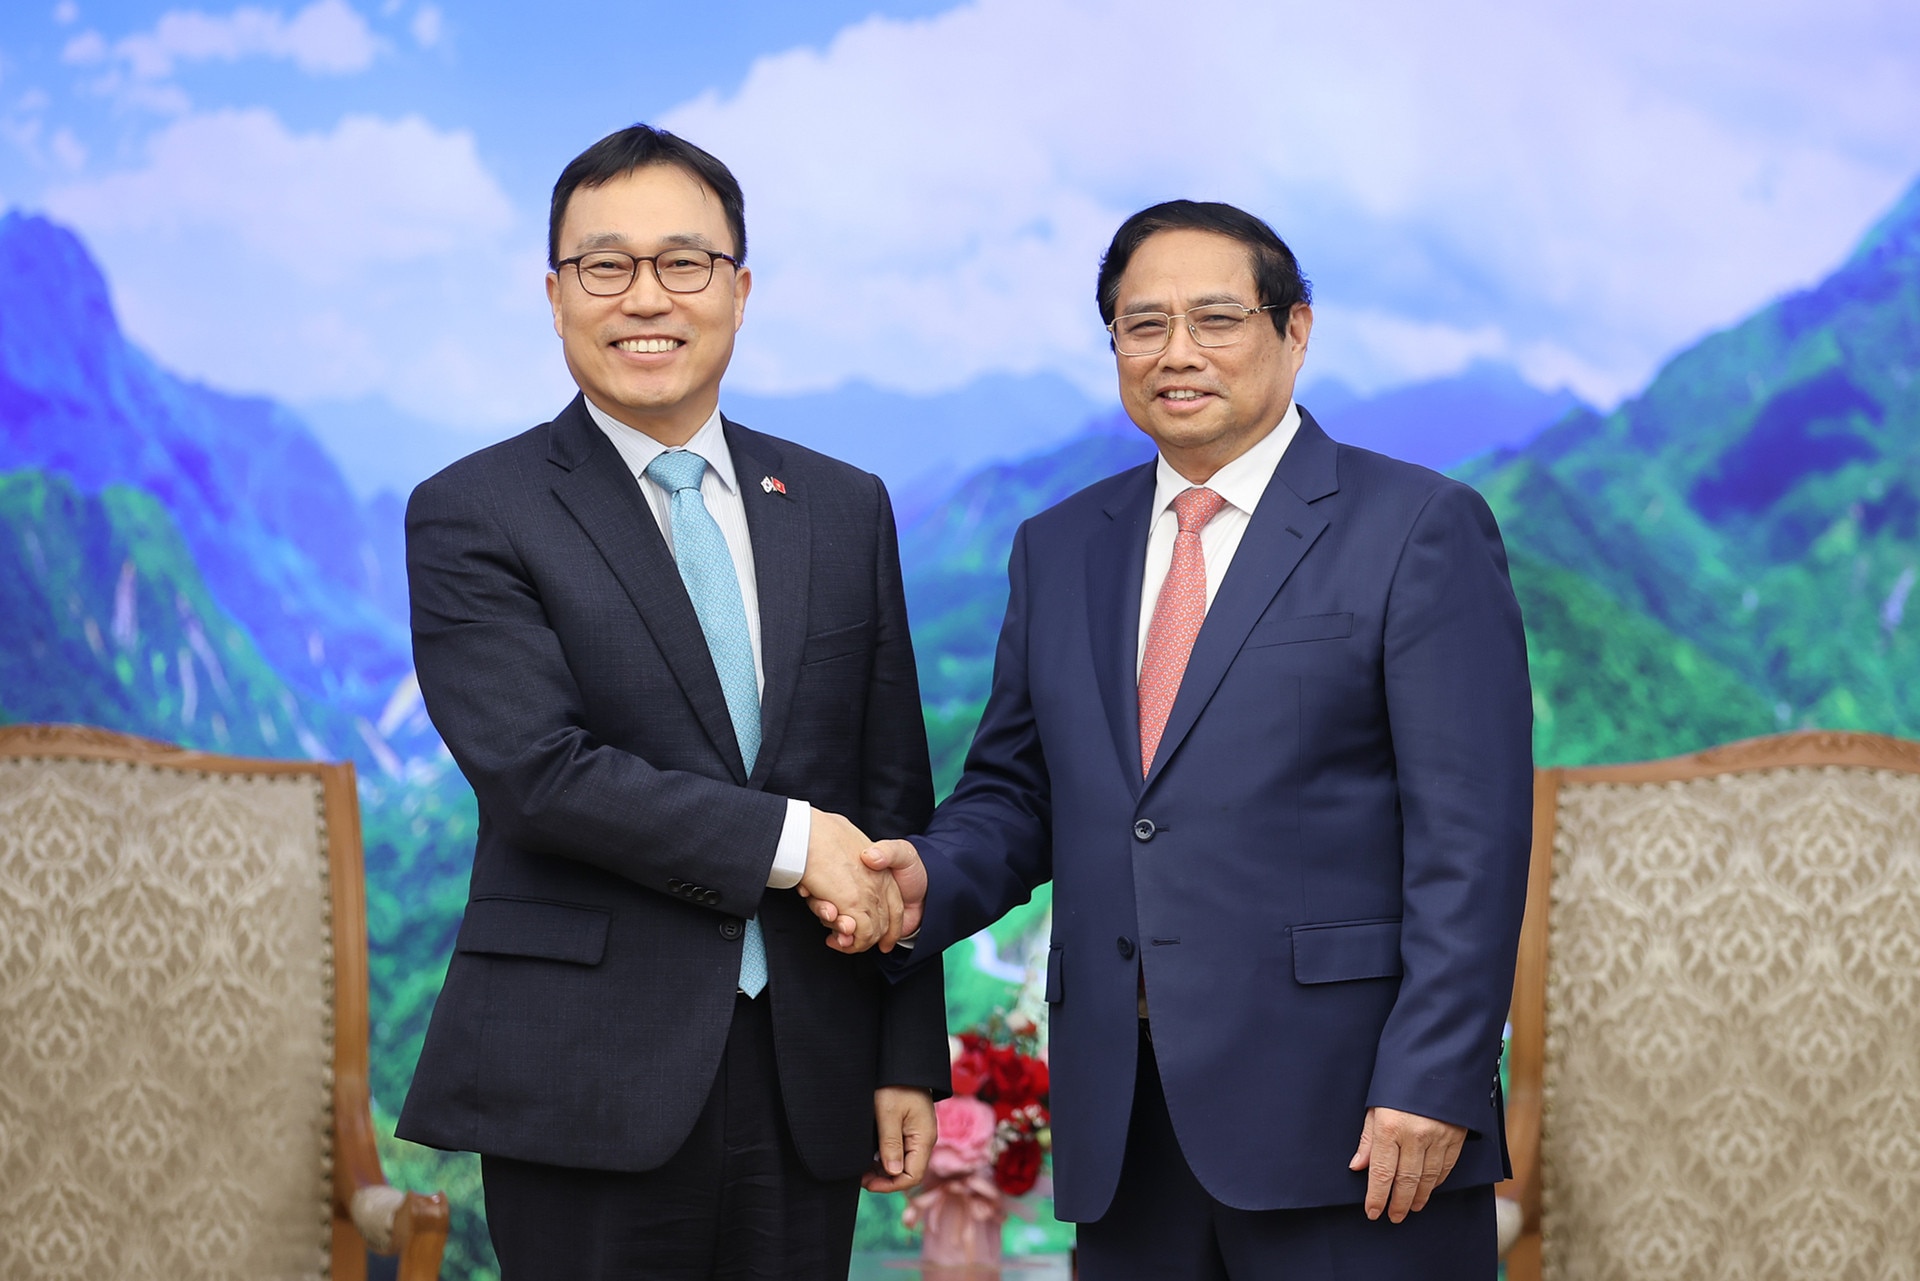 Thủ tướng khuyến khích doanh nghiệp Hàn Quốc đầu tư bán dẫn, AI tại Việt Nam